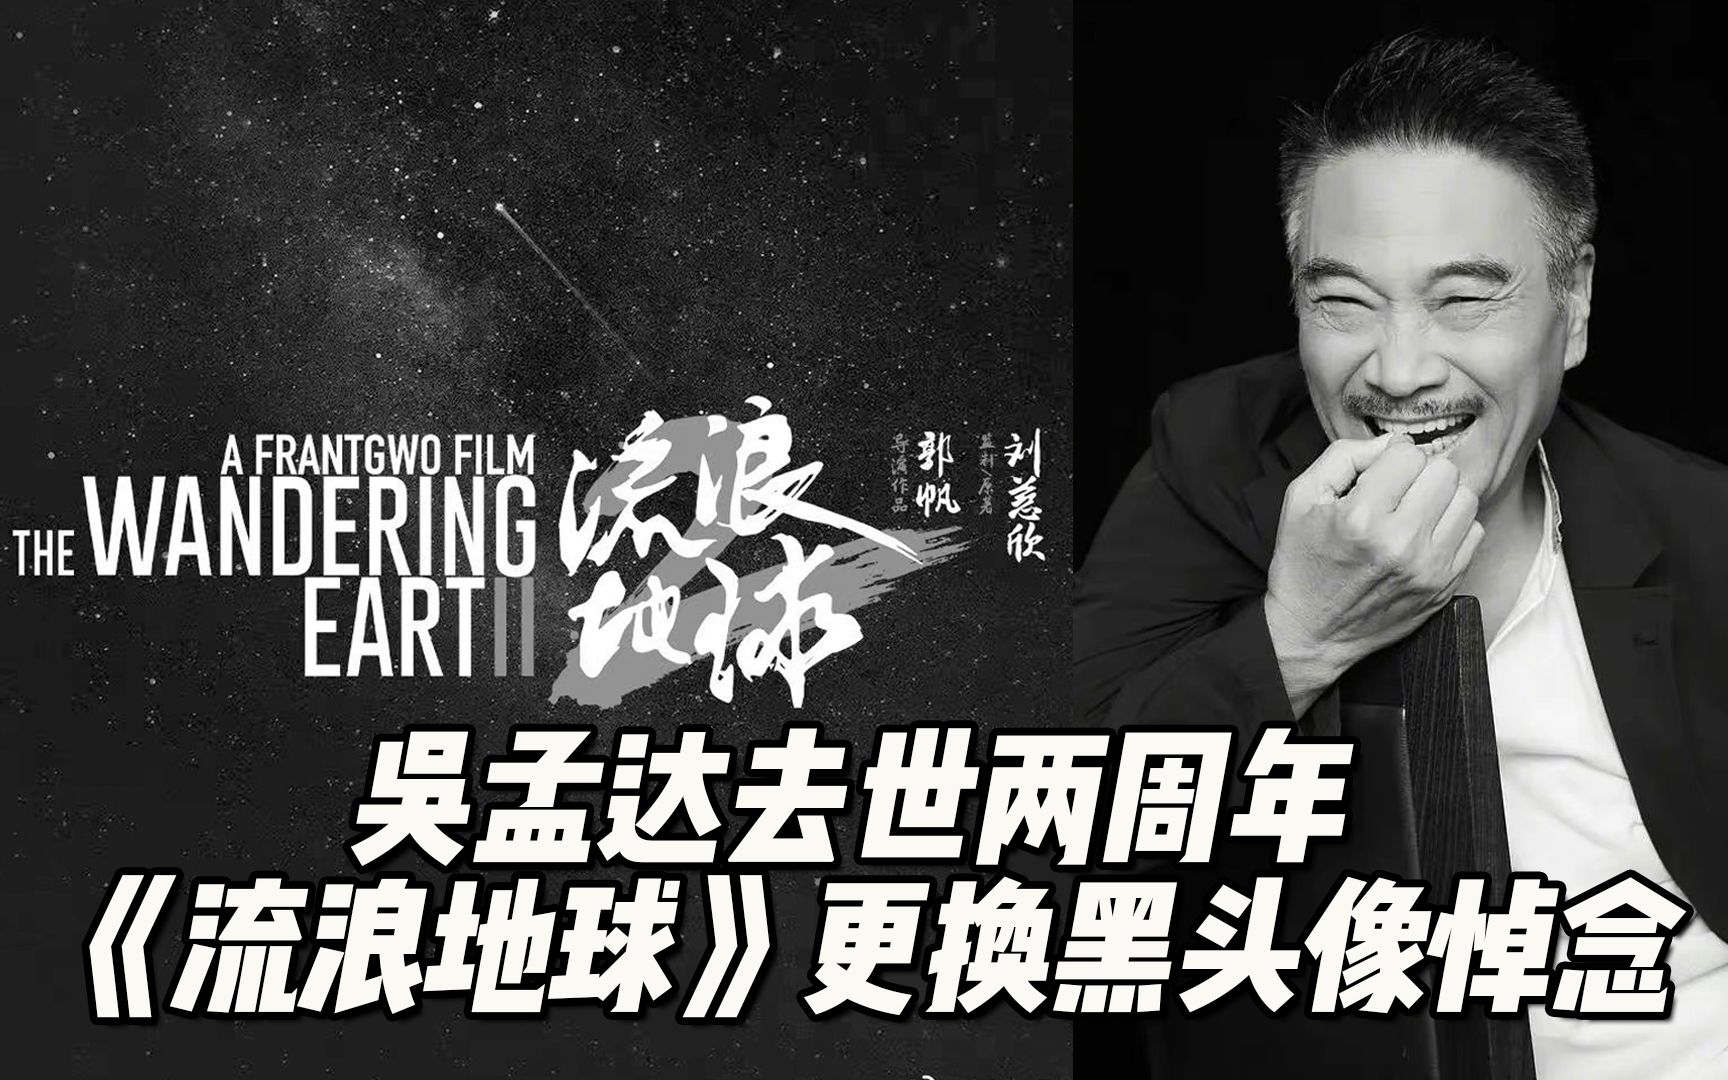 吴孟达去世两周年 ，《流浪地球》官方更换黑头像悼念，导演郭帆晒图表示思念